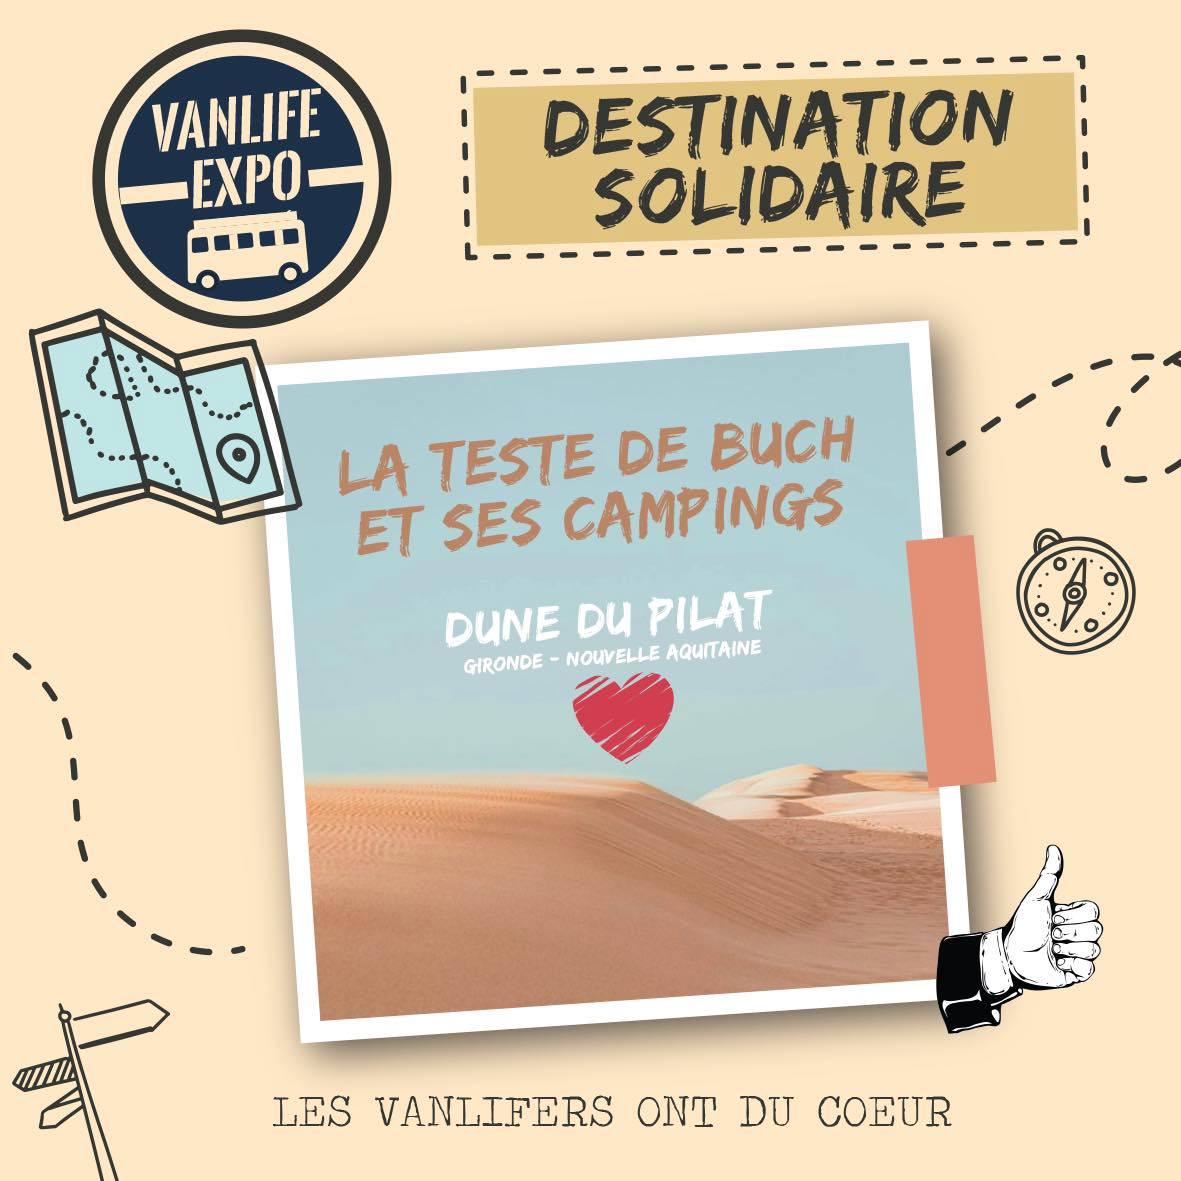 Featured image for “La Teste de Buch et ses campings<br>Destination Solidaire 2023”